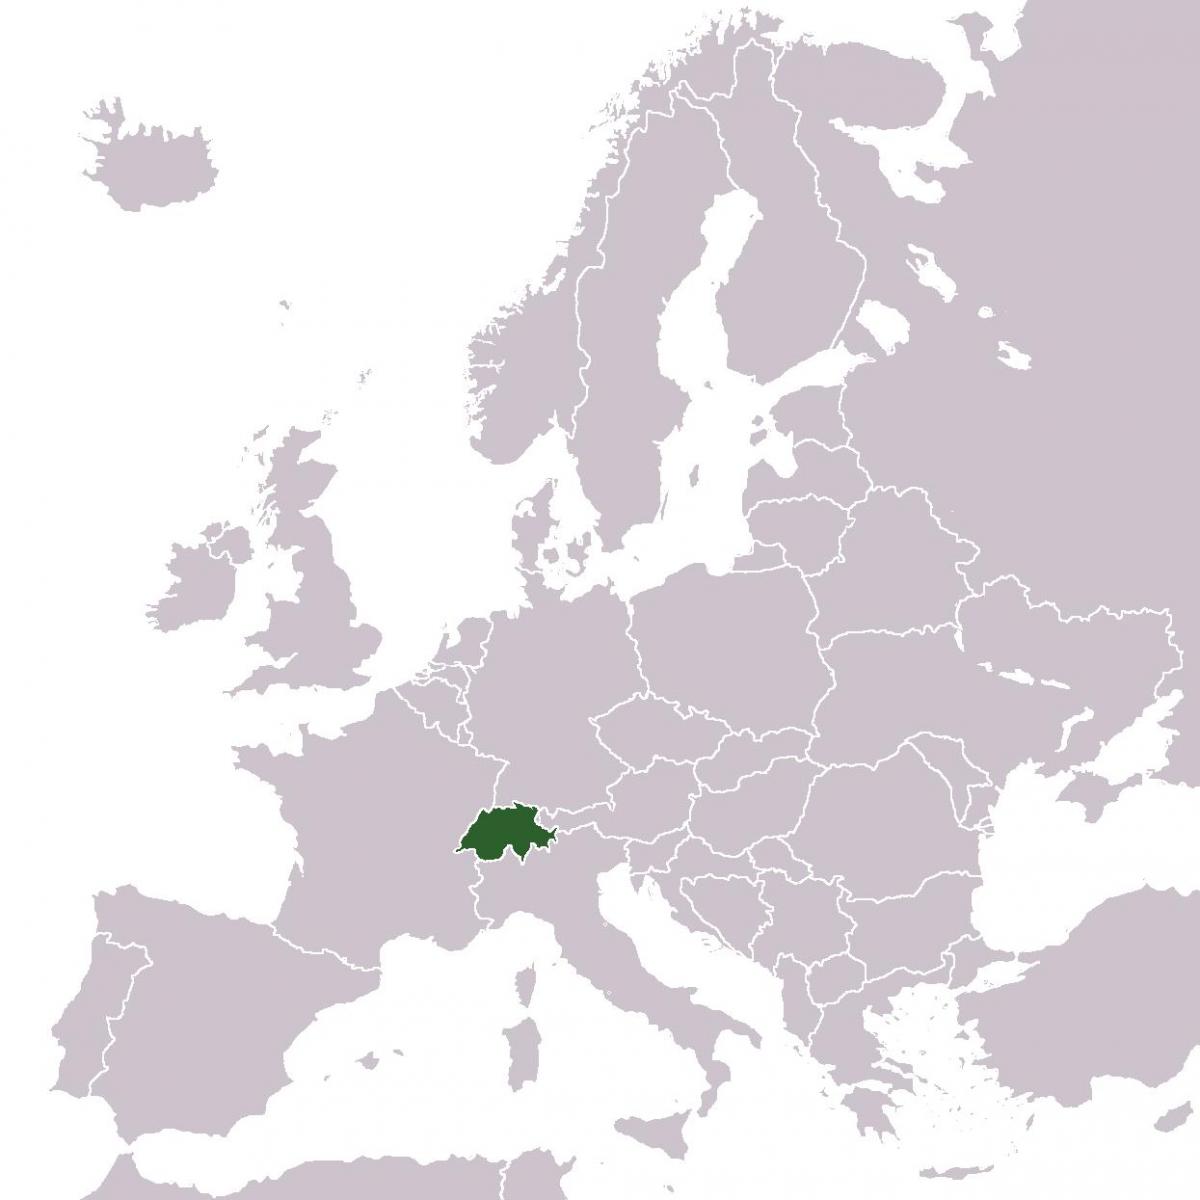 švicarskoj mjesto u evropi mapu